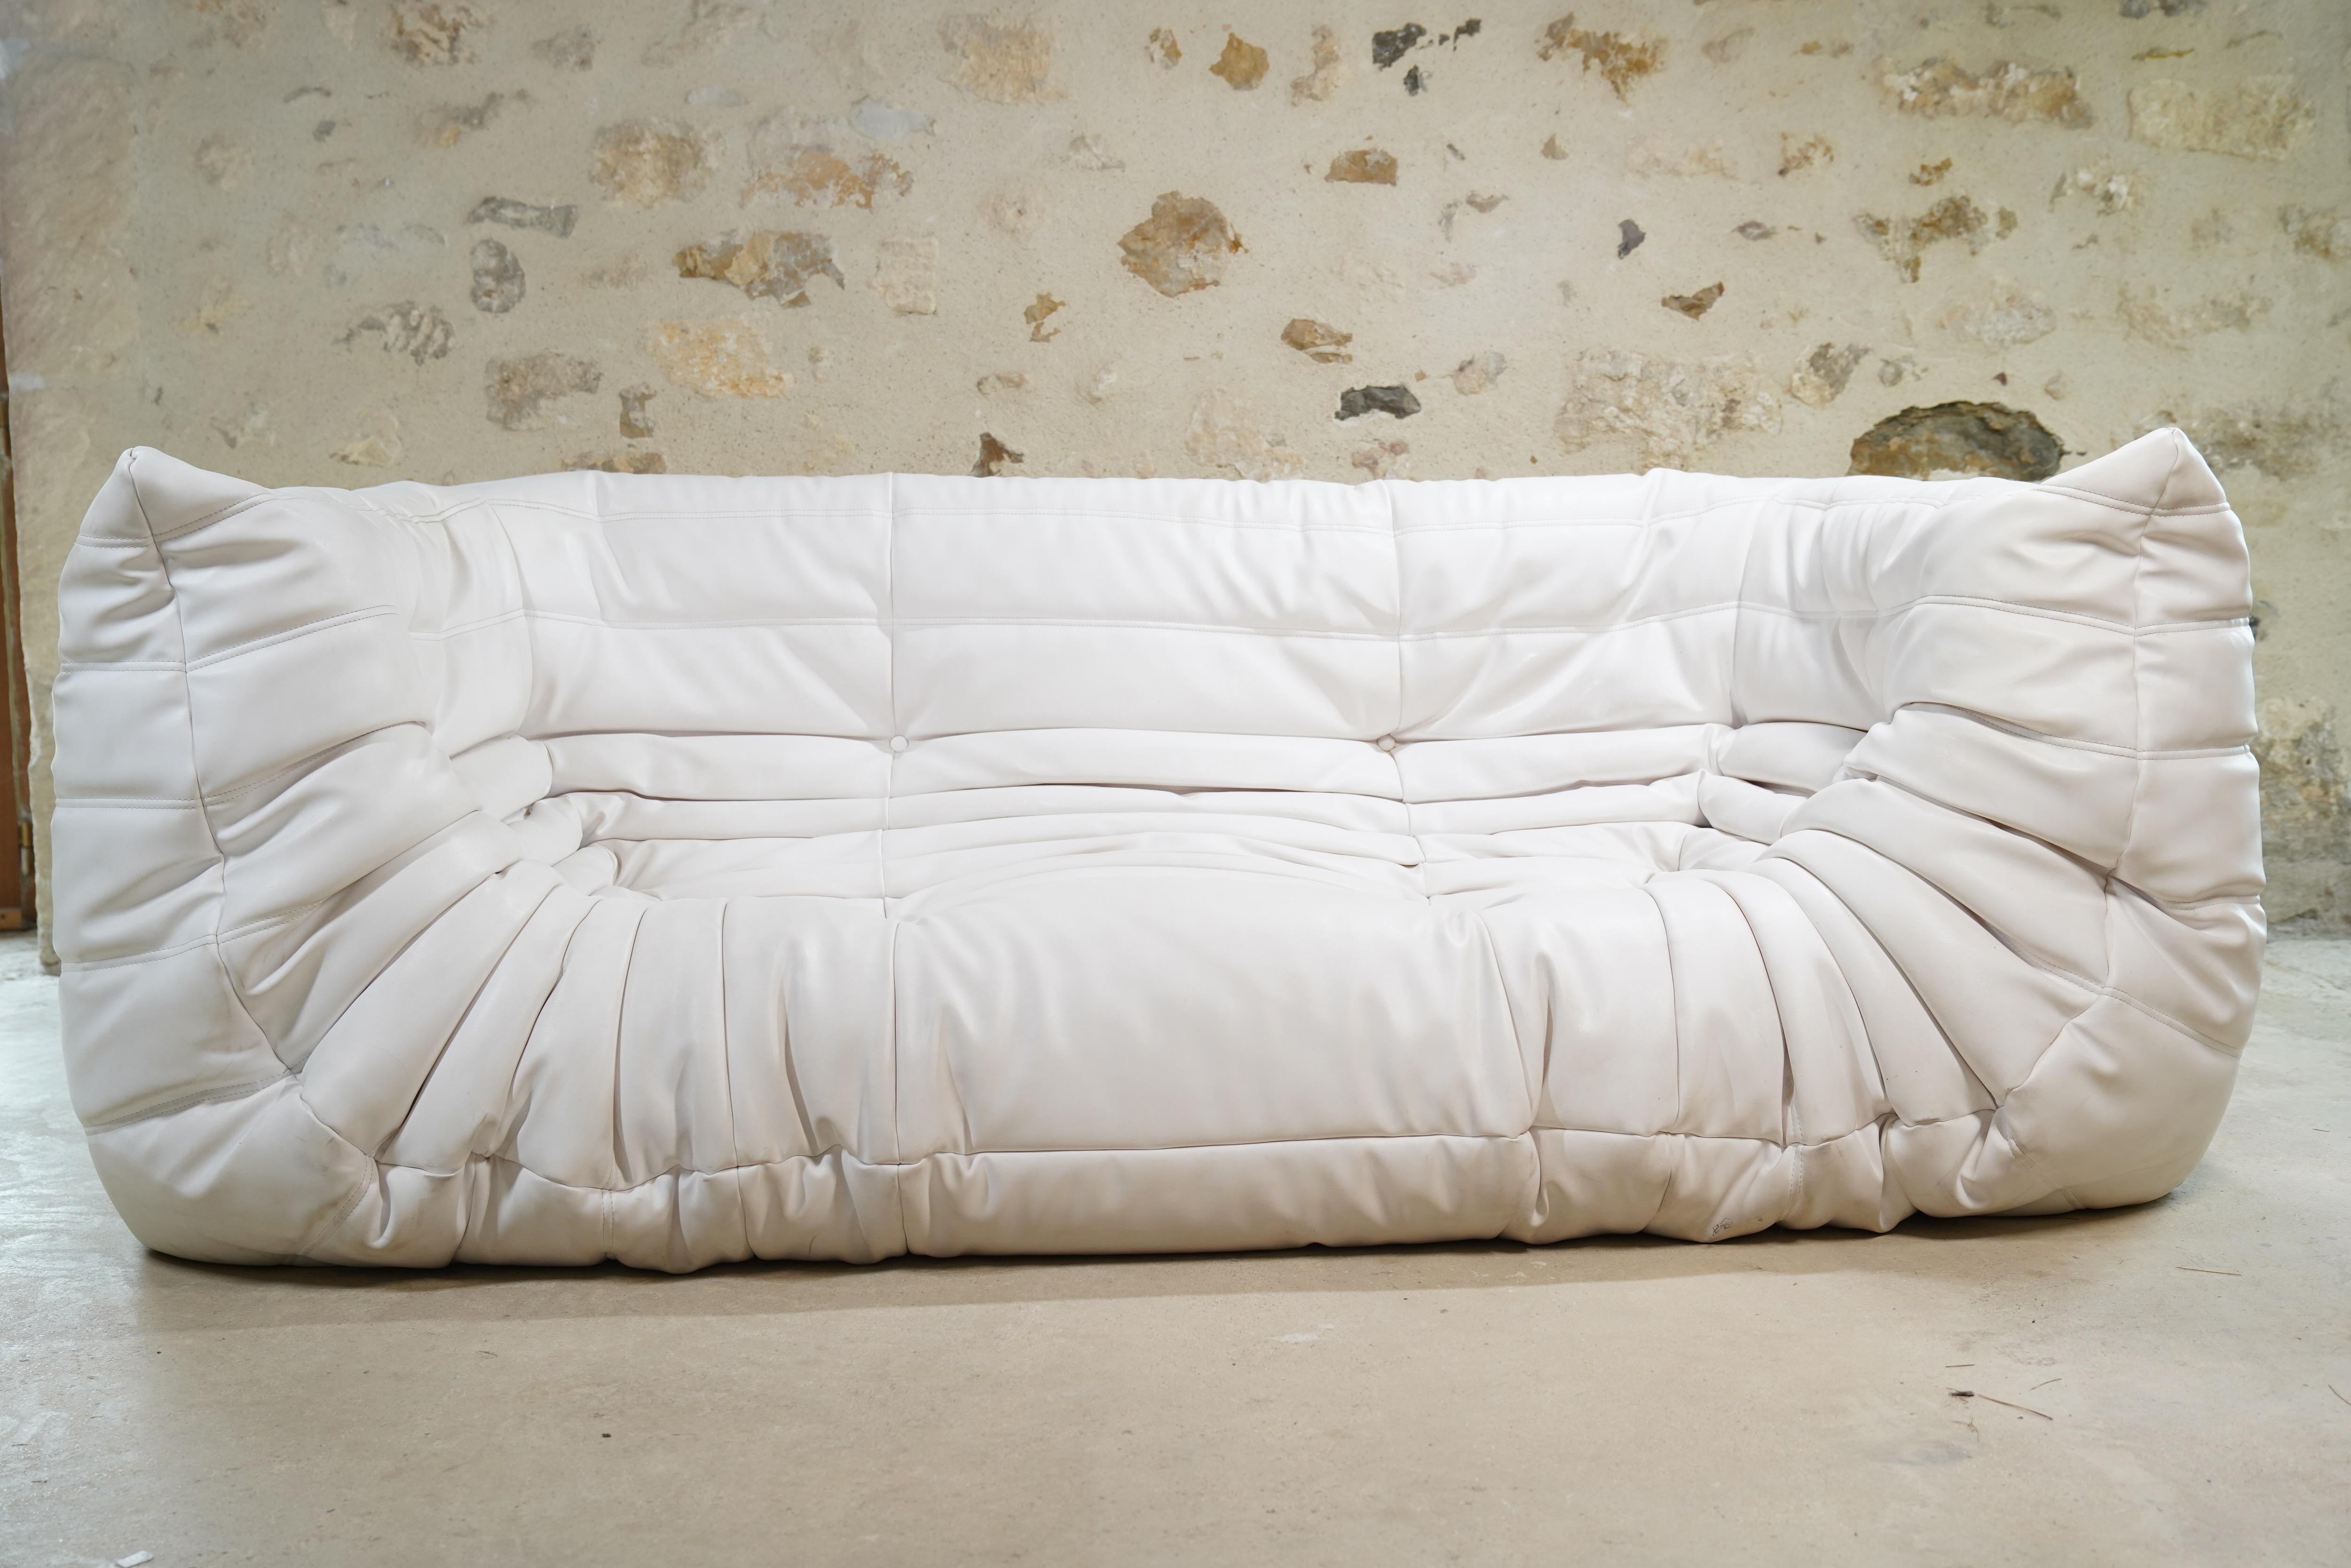 Magnifique canapé Togo à trois places en cuir blanc conçu par Michel Ducaroy pour Ligne Roset en 2008. (Deux disponibles - l'autre fait l'objet d'une annonce séparée).

Le designer Michel Ducaroy s'est inspiré d'un tube de dentifrice en aluminium